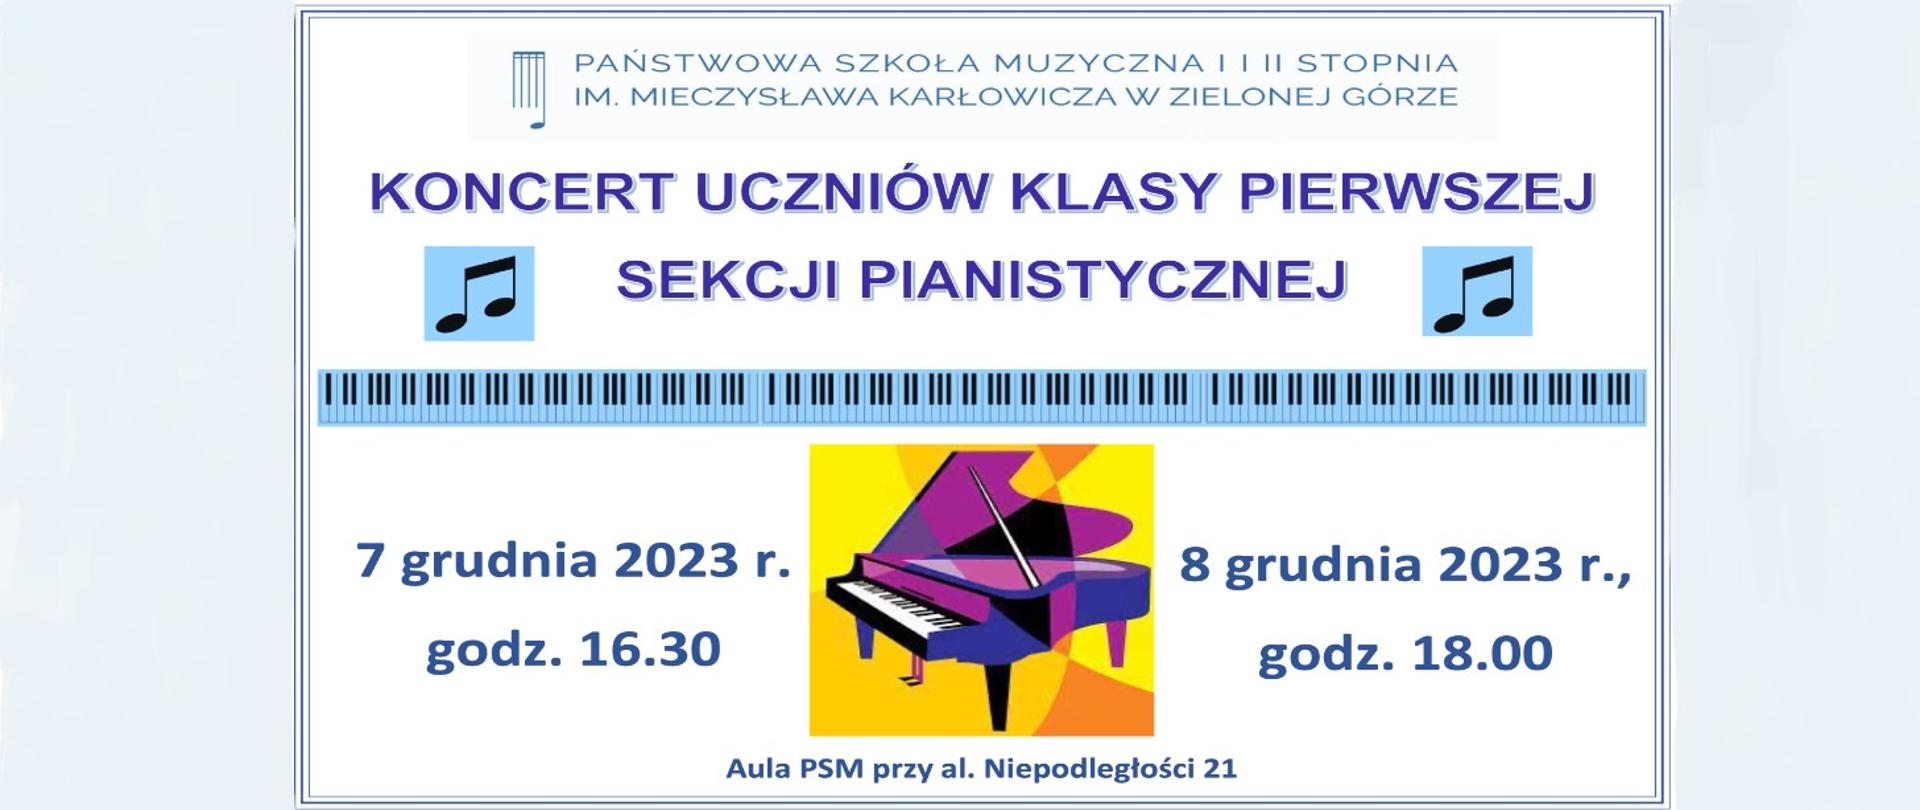 Grafika przedstawia afisz koncertu uczniów klasy pierwszej sekcji pianistycznej. U góry logo i nazwa szkoły, pod spodem granatowy tekst koncert uczniów klasy pierwszej sekcji pianistycznej, 7 i 8 grudnia 2023 roku.